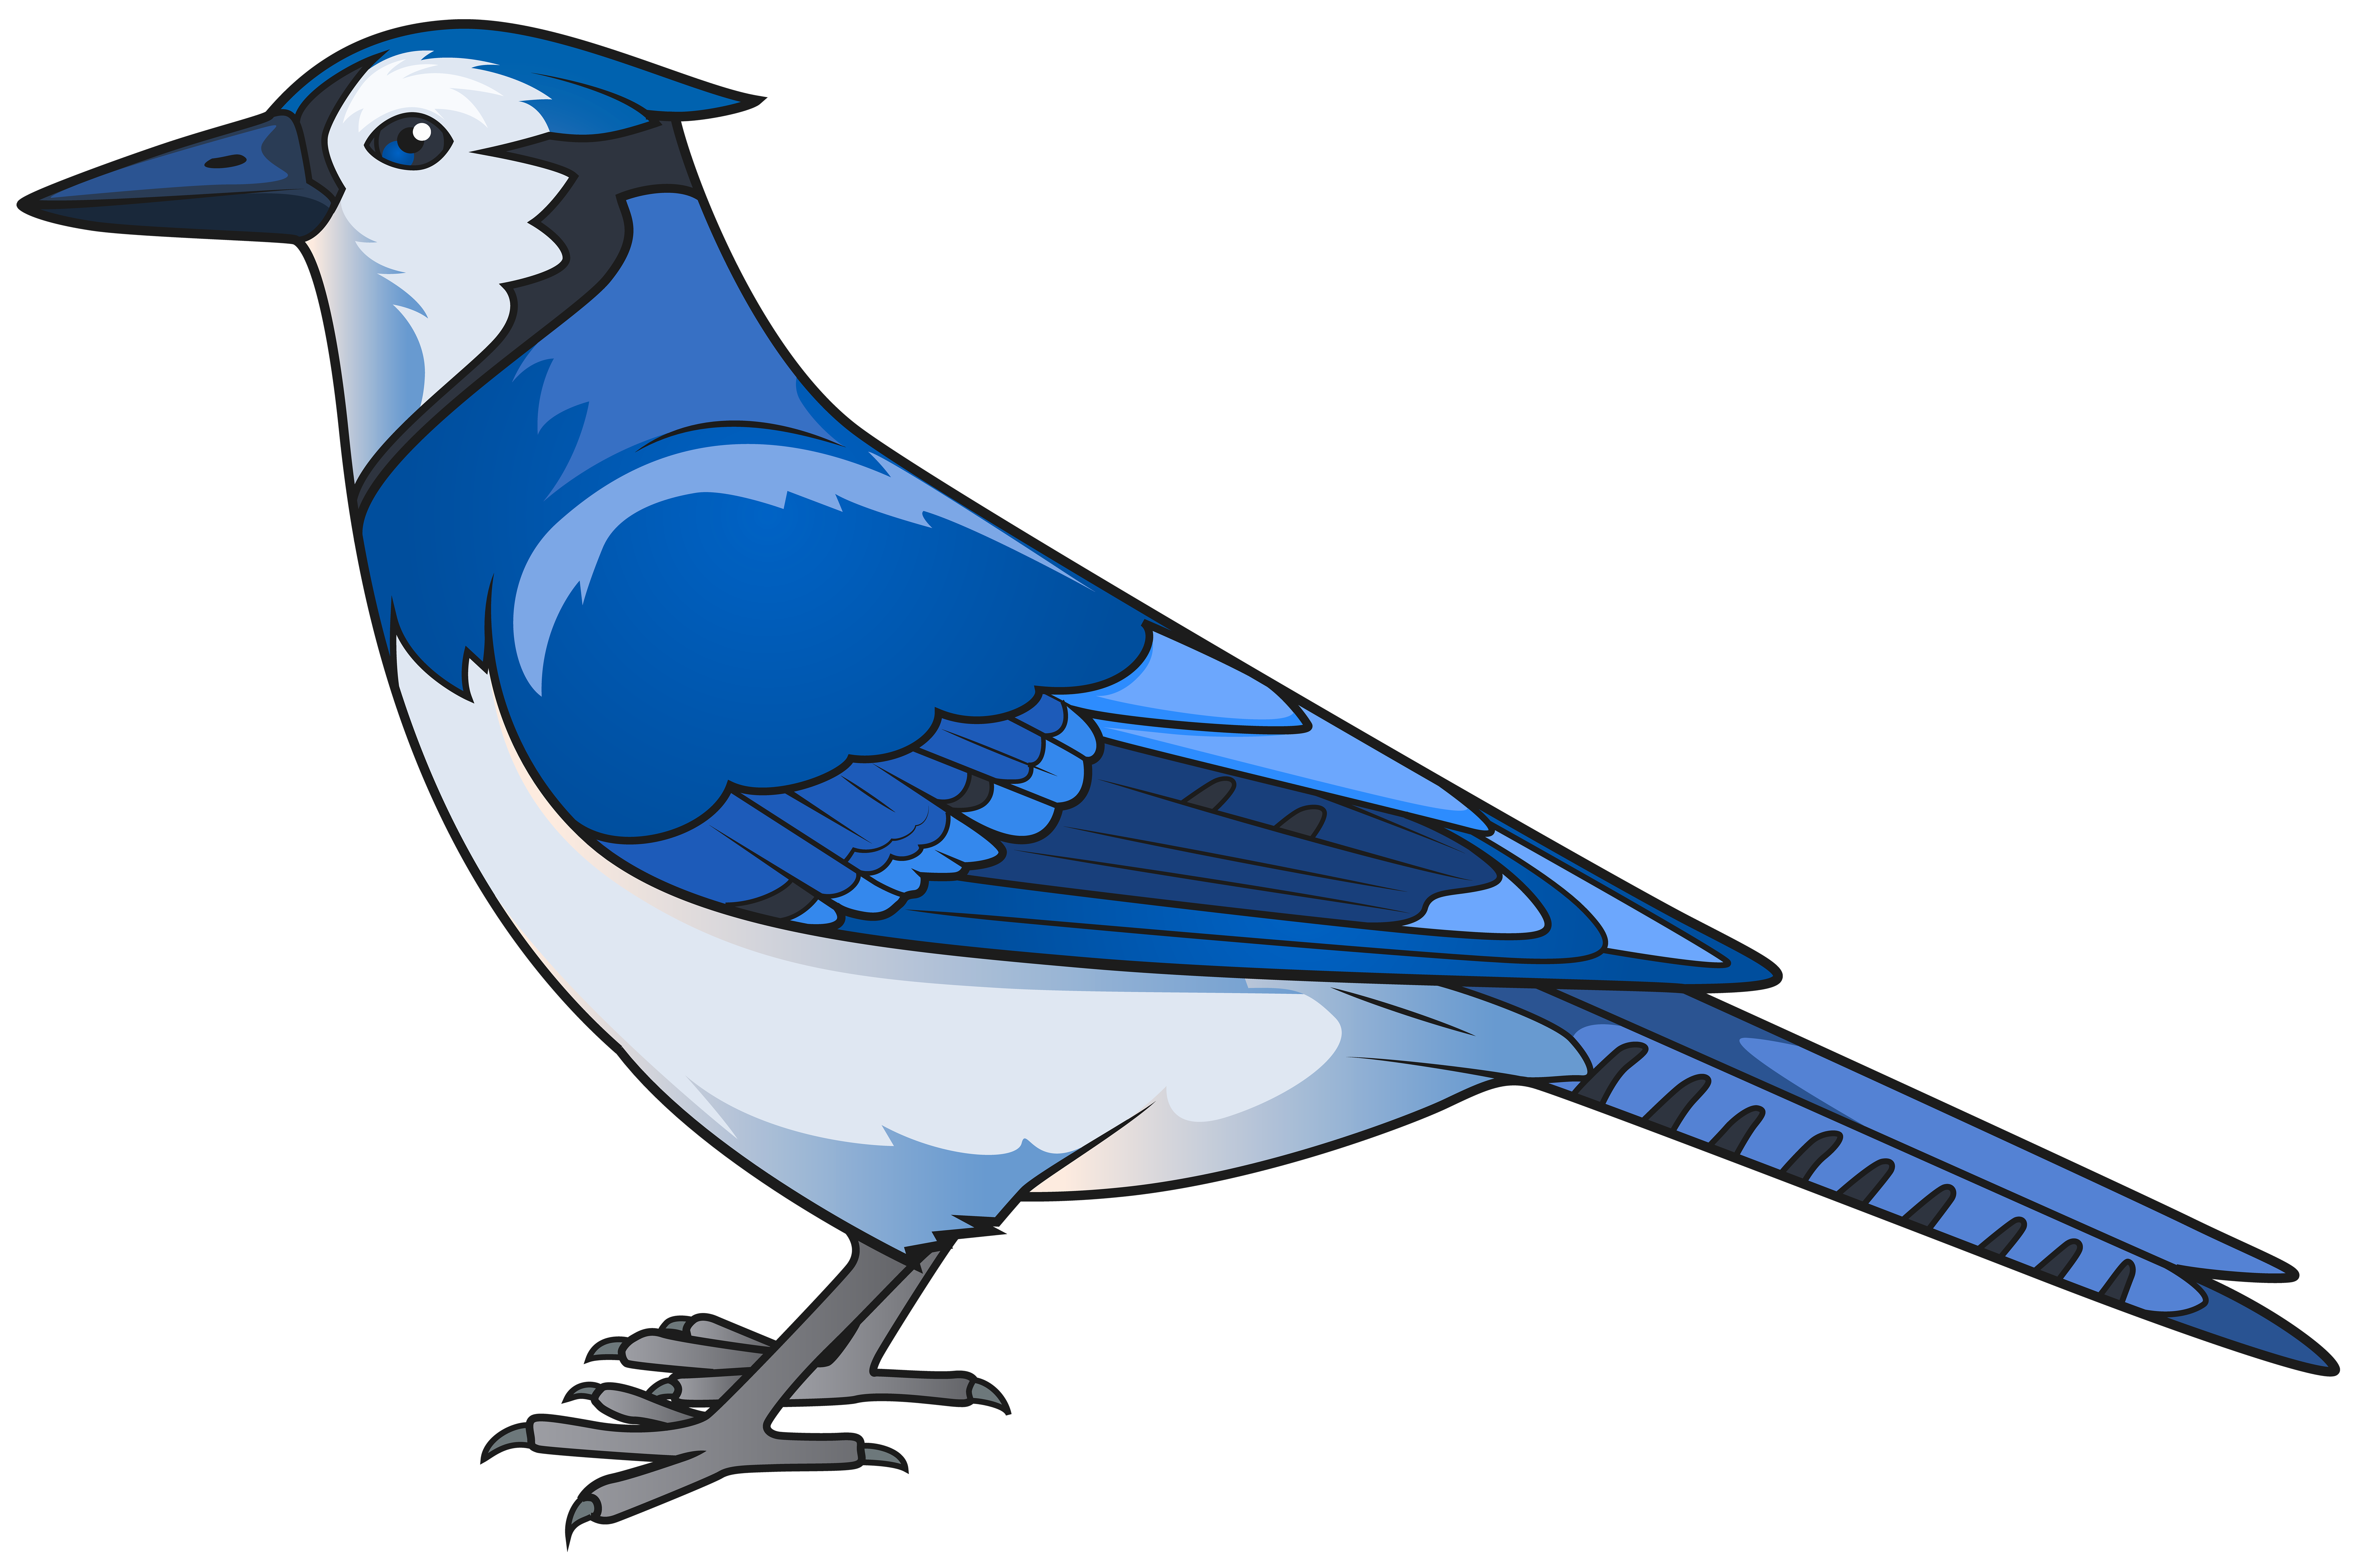 Eastern Bluebird Clip Art Blue Bird Transparent Png Clip Art Image